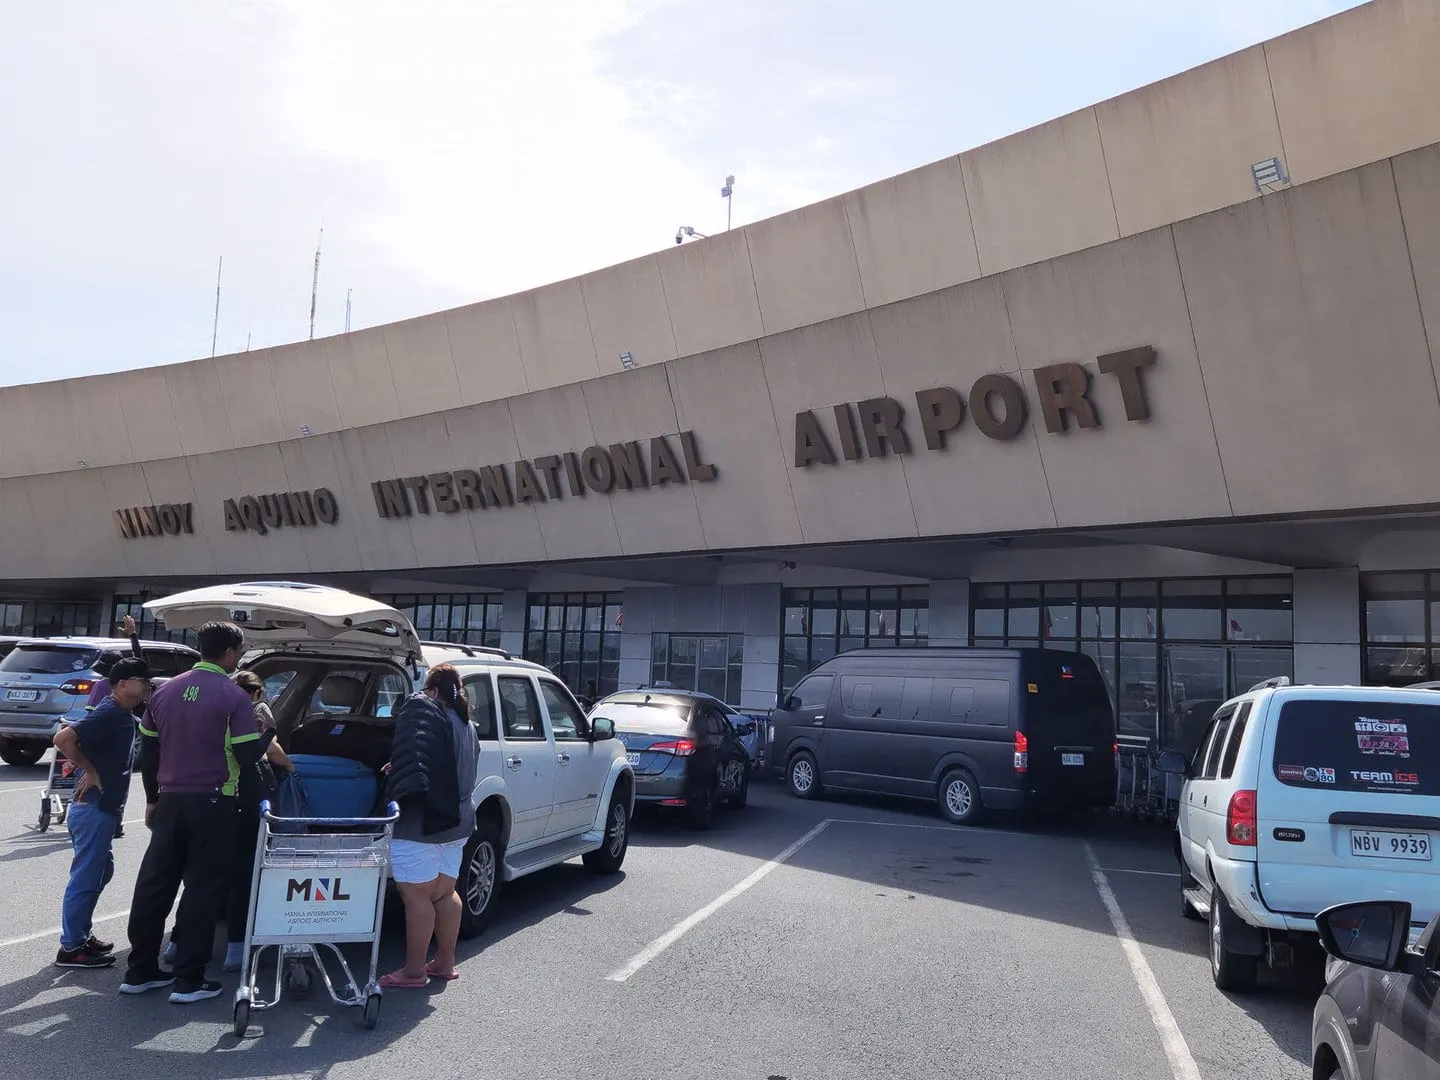 Ninoy Aquino International Airport. Source: kriantransport.com